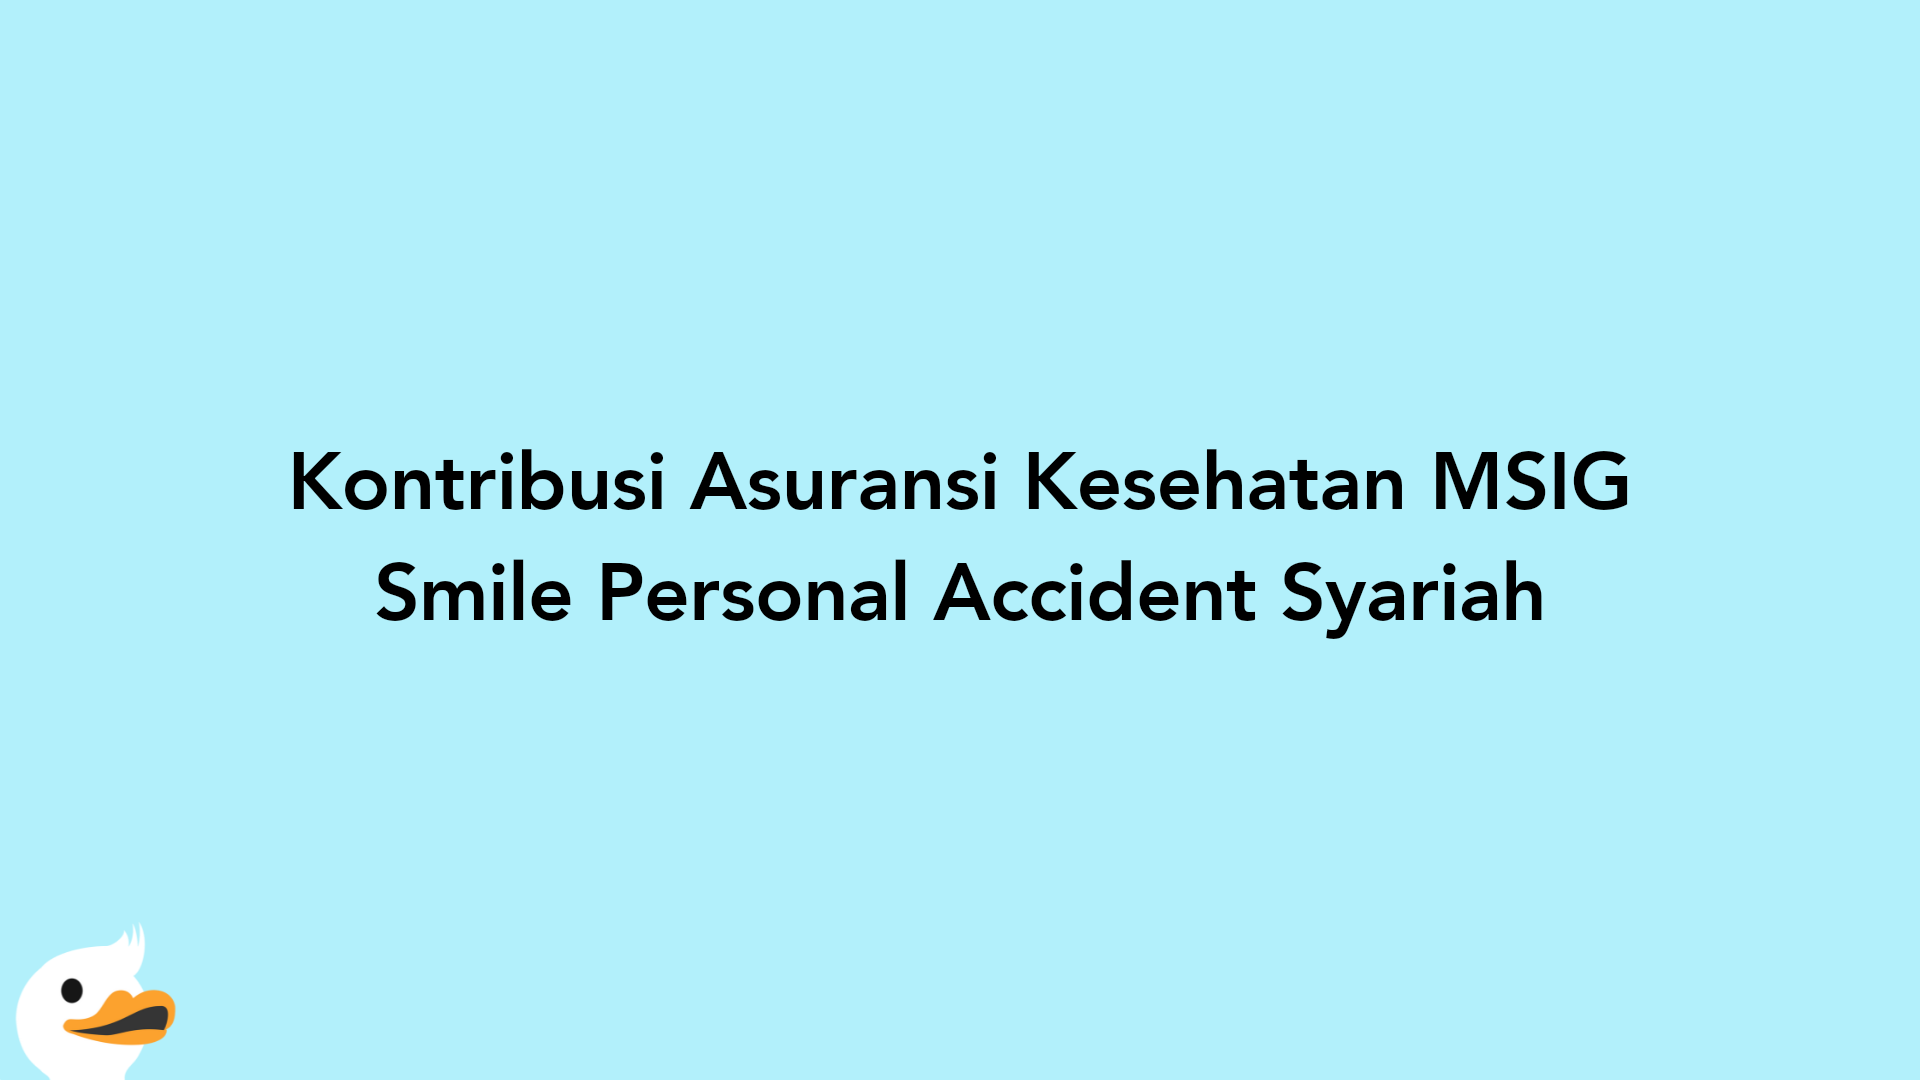 Kontribusi Asuransi Kesehatan MSIG Smile Personal Accident Syariah